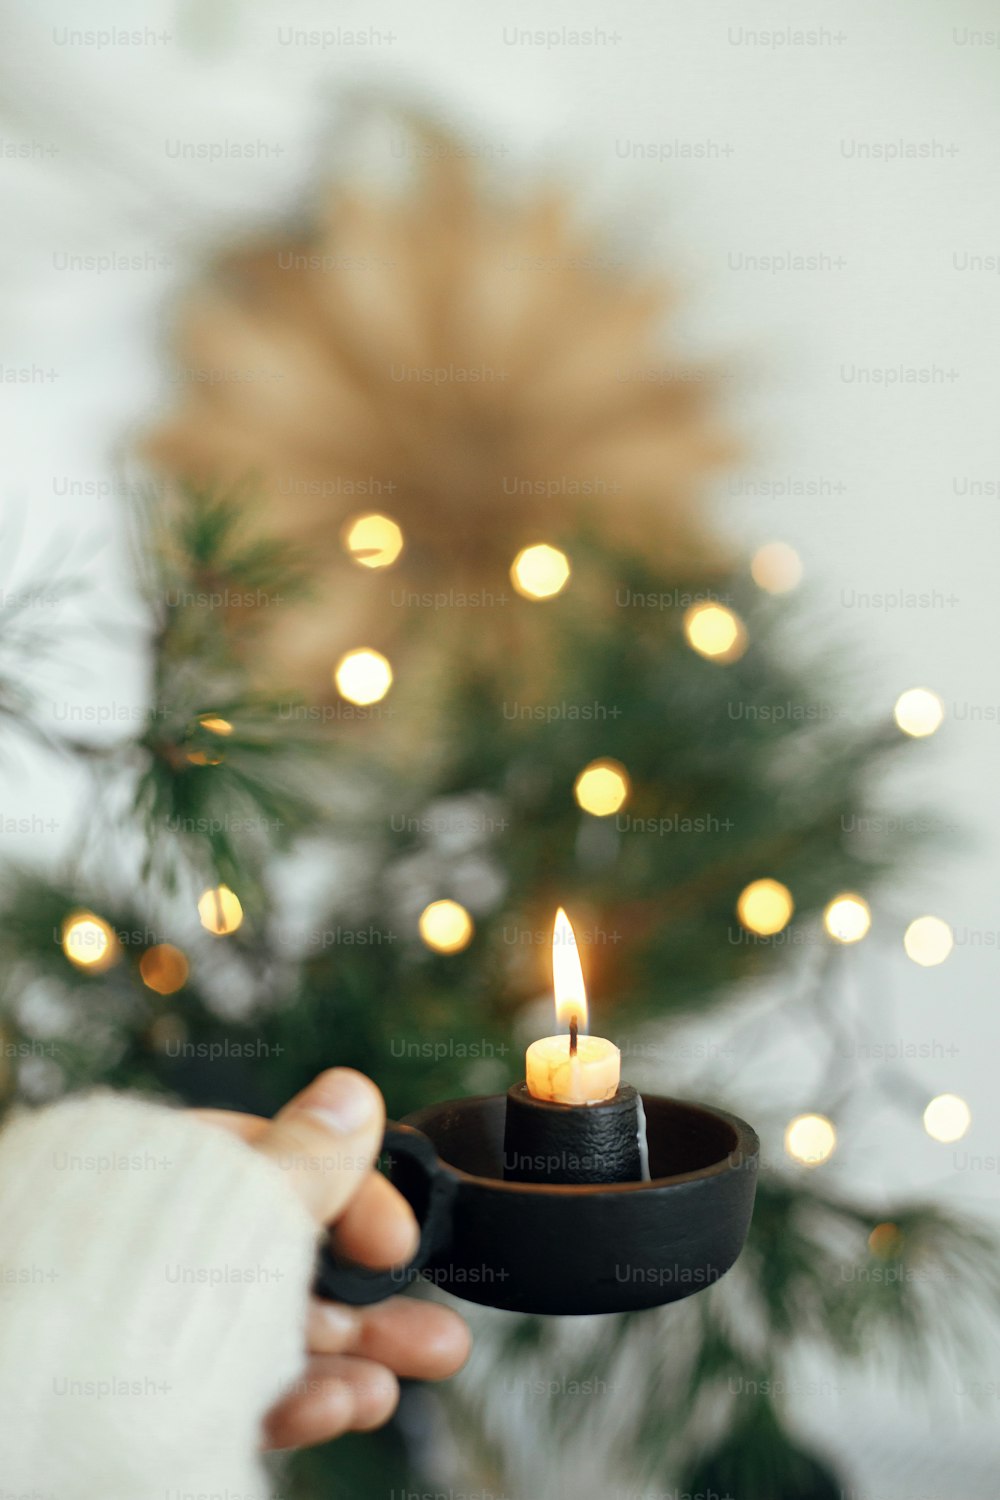 따뜻한 조명, 전나무 가지, 축제 스칸디나비아 방의 스웨덴 별을 배경으로 불타는 촛불이 있는 빈티지 촛대를 들고 아늑한 스웨터를 입고 있습니다. 분위기 있는 휘게 홈. 겨울 시간